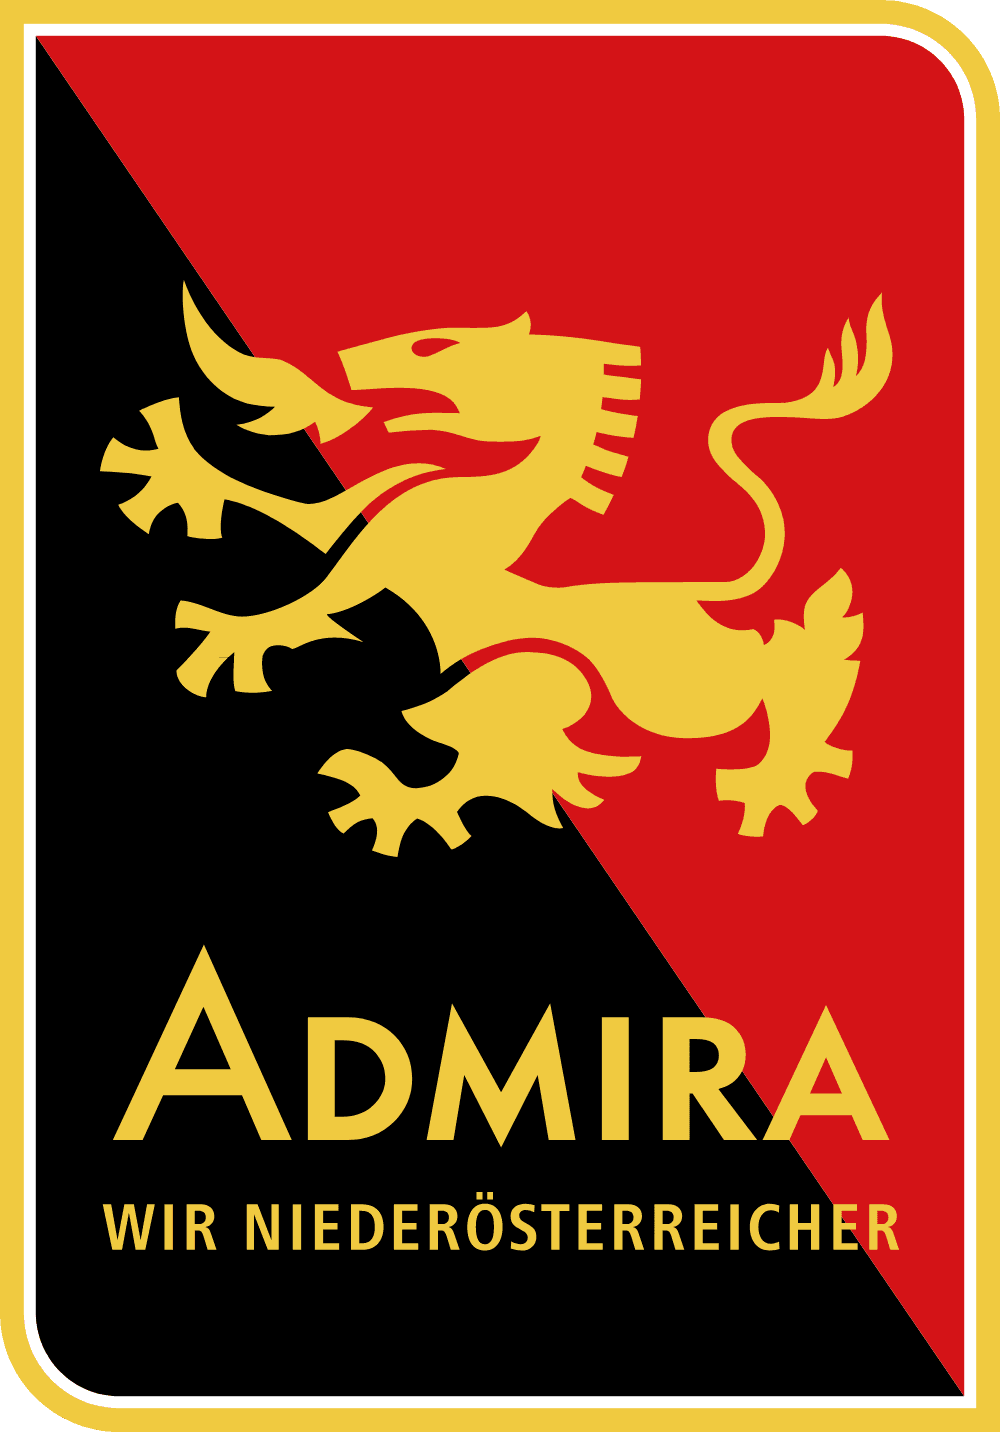 Herold Admira Wir Niederosterreicher Logo download